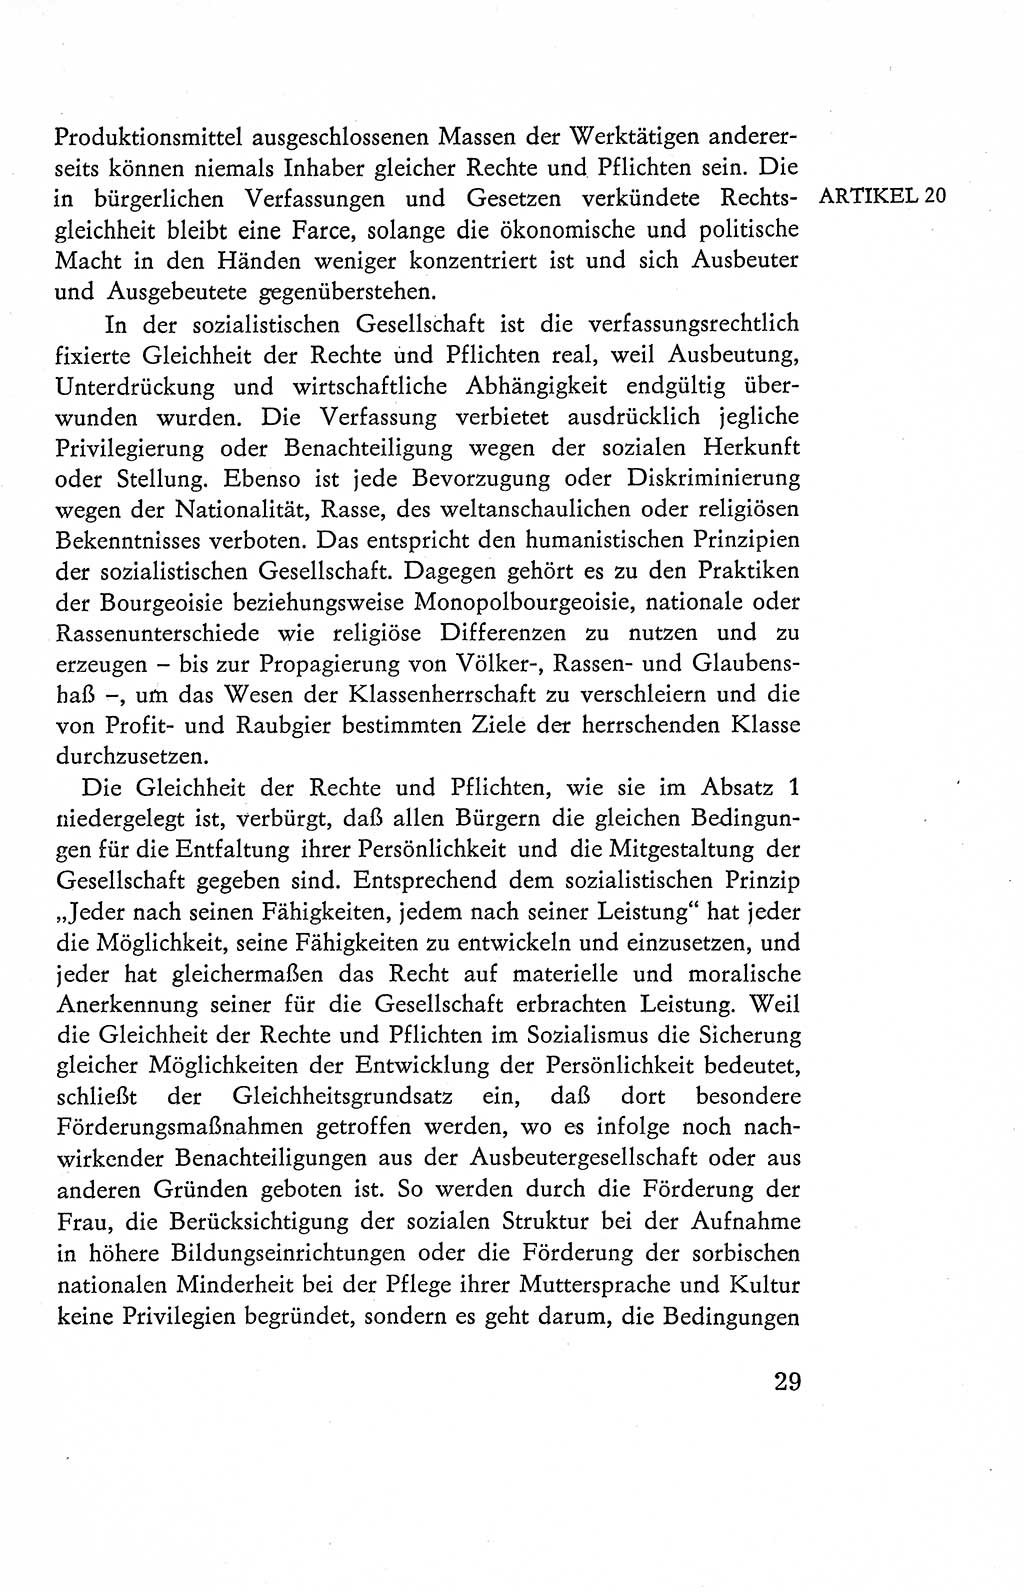 Verfassung der Deutschen Demokratischen Republik (DDR), Dokumente, Kommentar 1969, Band 2, Seite 29 (Verf. DDR Dok. Komm. 1969, Bd. 2, S. 29)